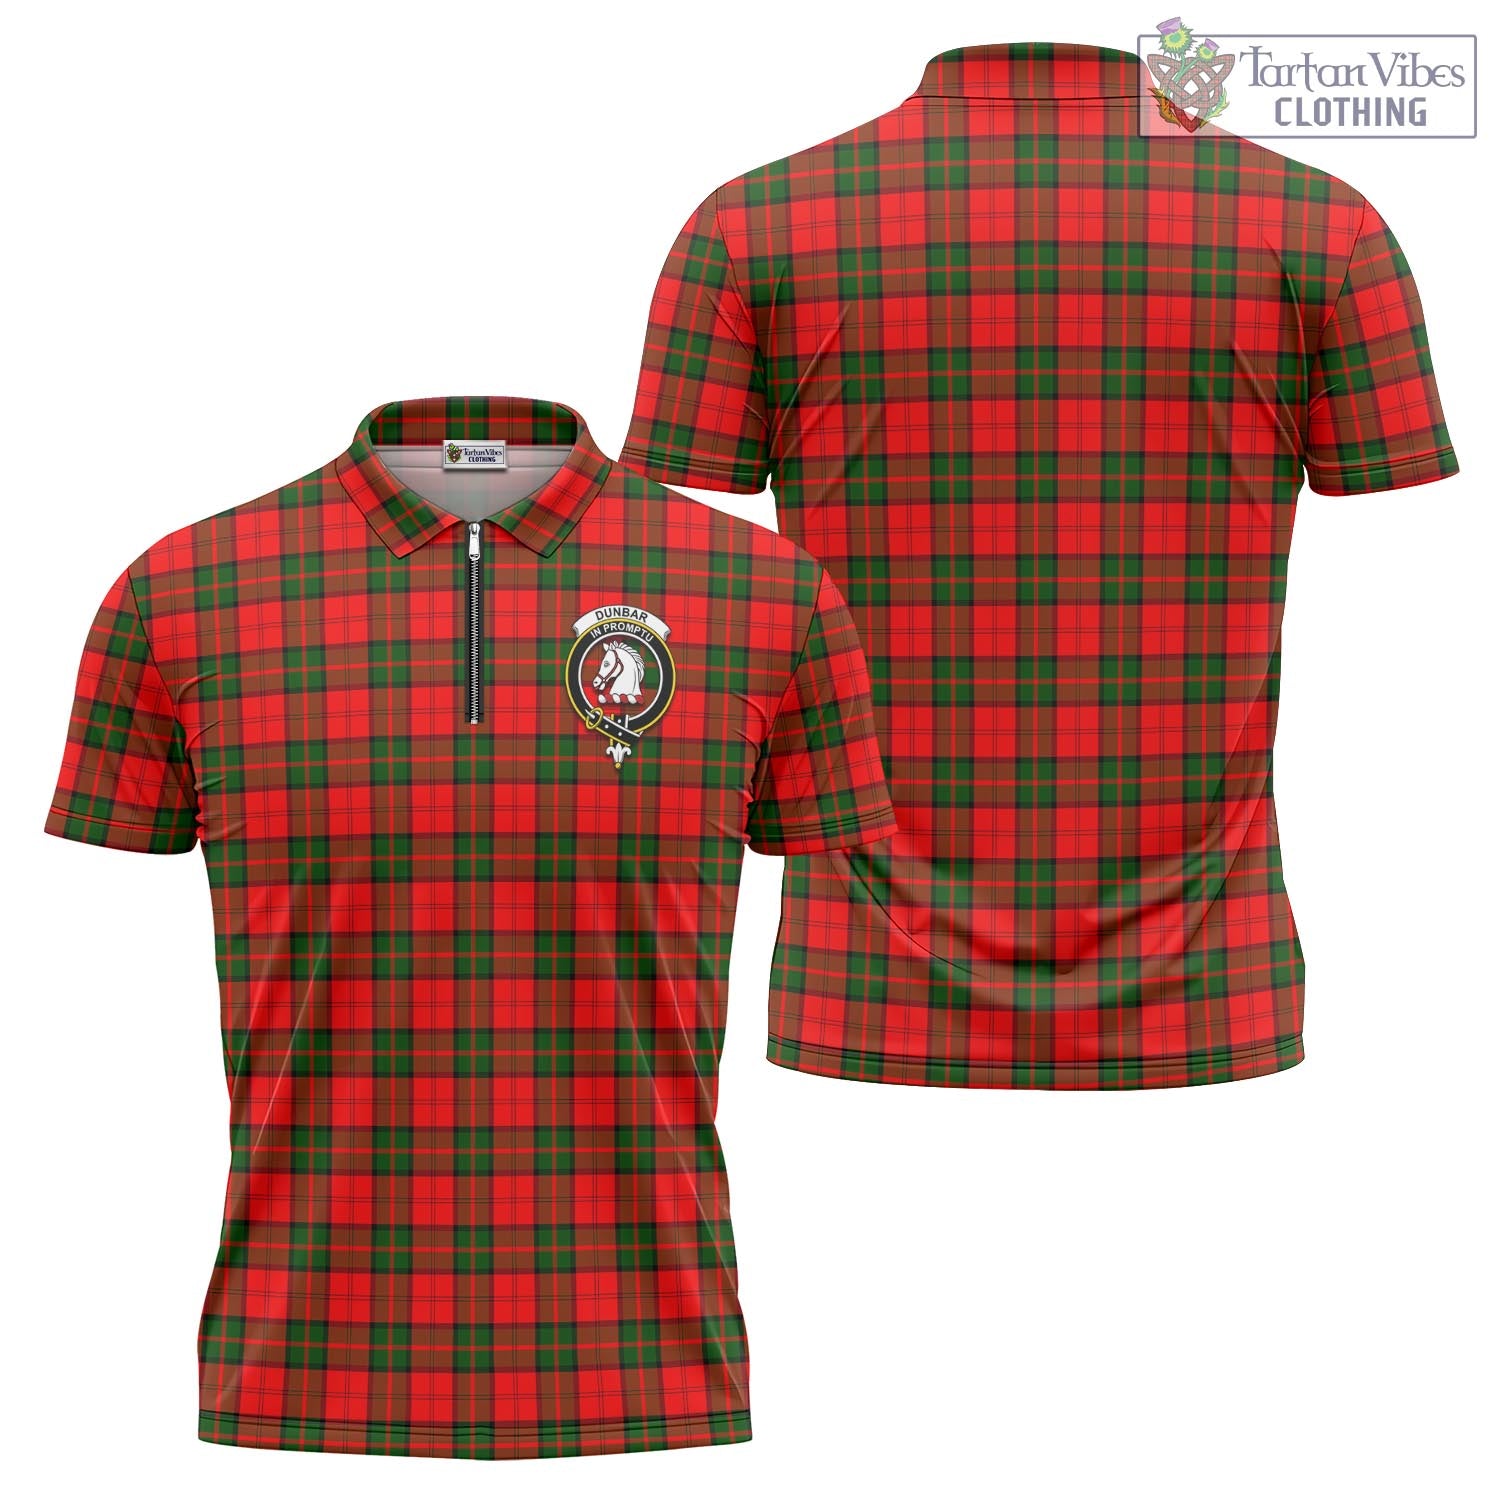 Tartan Vibes Clothing Dunbar Modern Tartan Zipper Polo Shirt with Family Crest